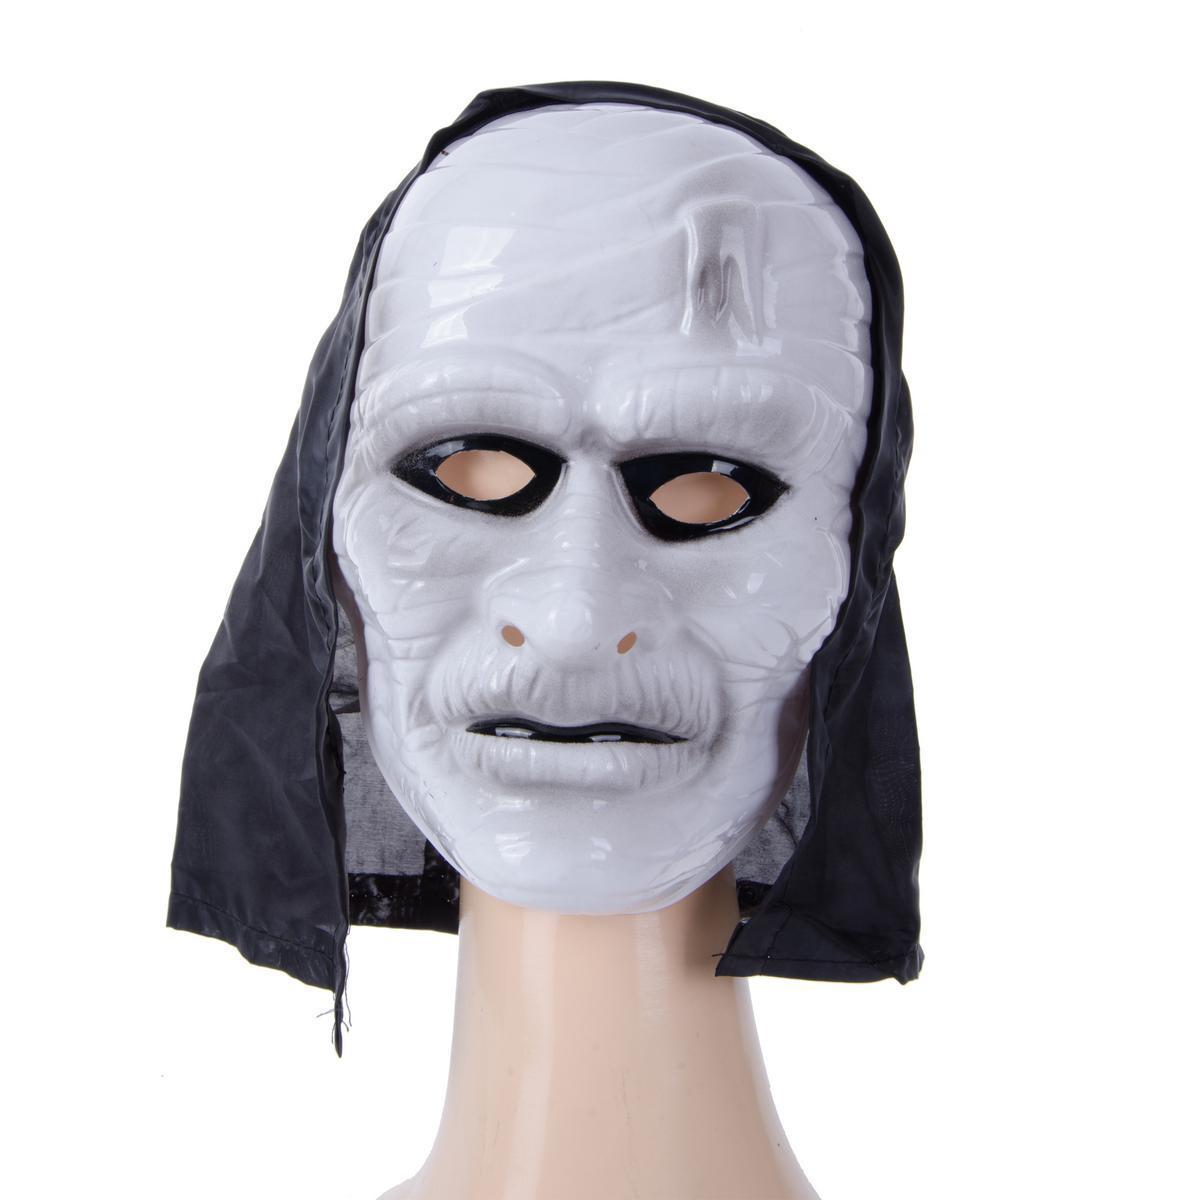 Masque cagoule - PVC - 25 x 19 cm - Noir et blanc